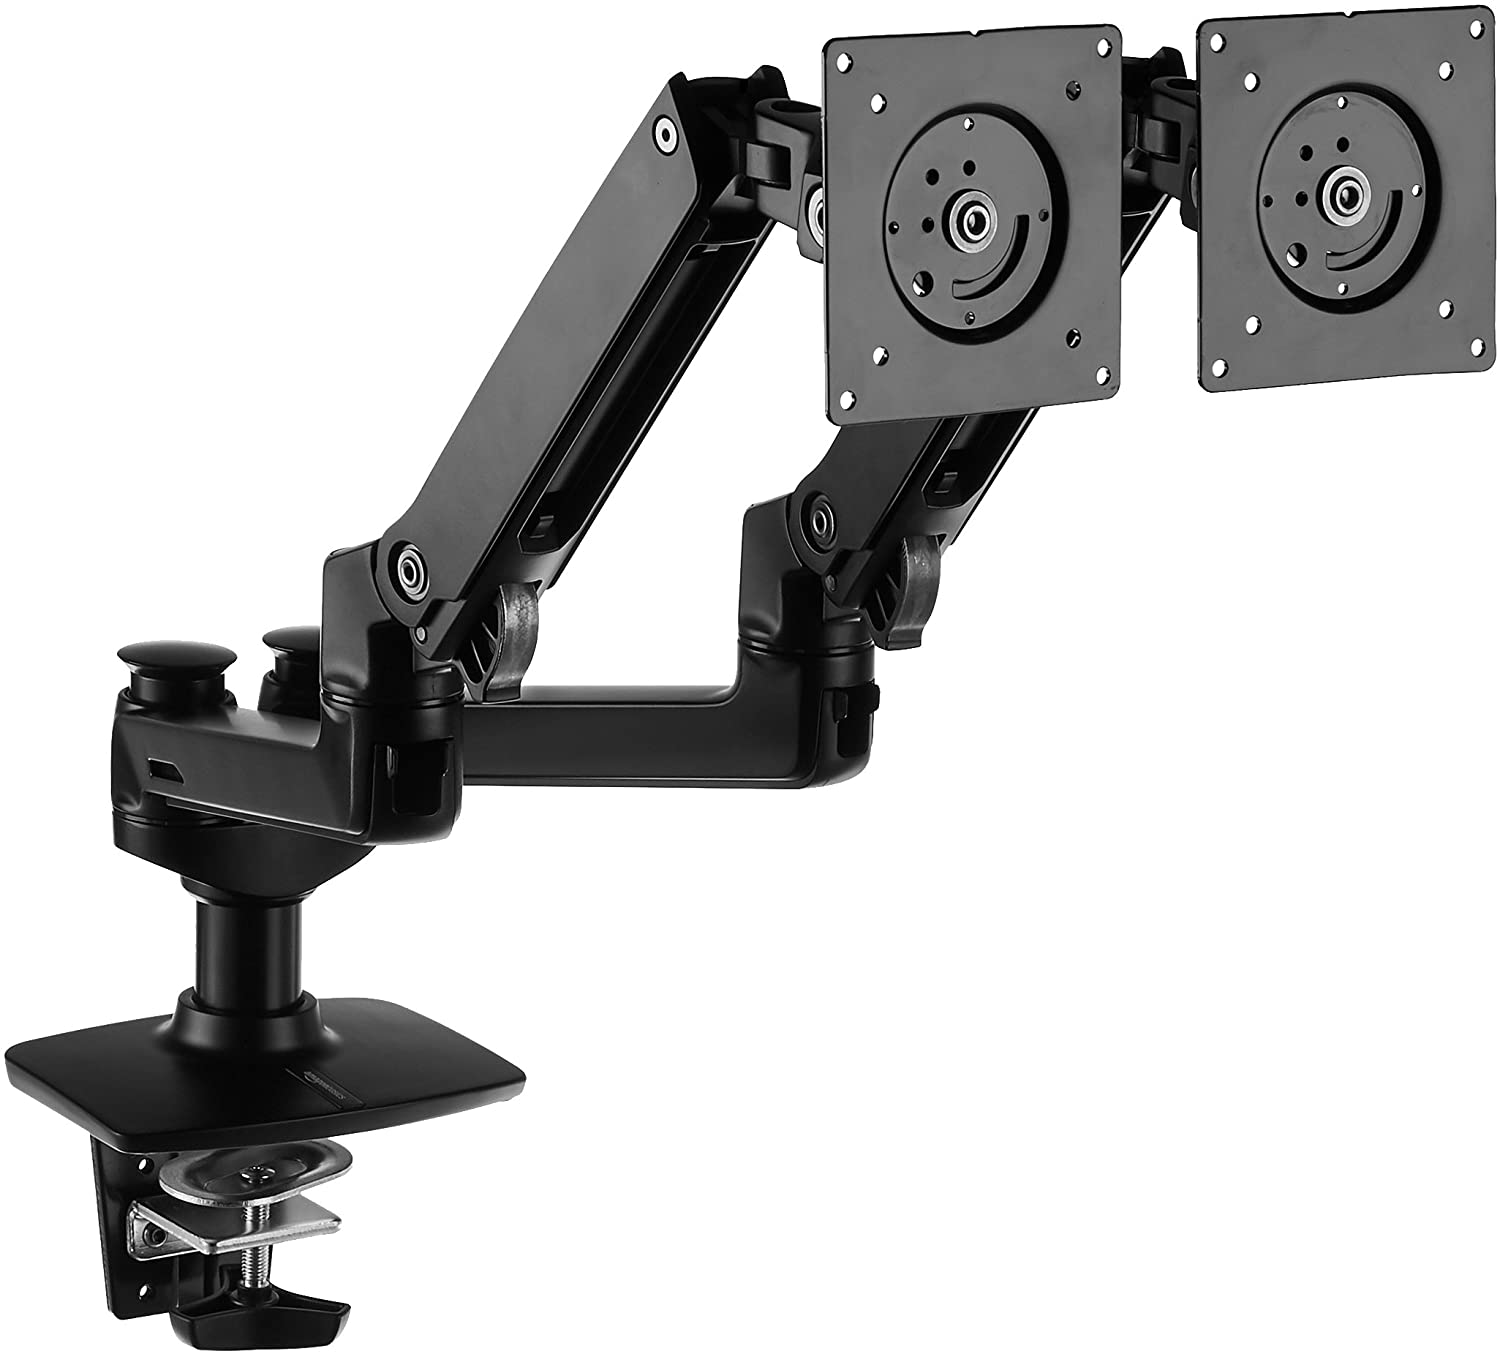 Amazon Basics Dual Monitor Stand - Lift Engine Arm Mount, Aluminum - Black : Electronics $119.99